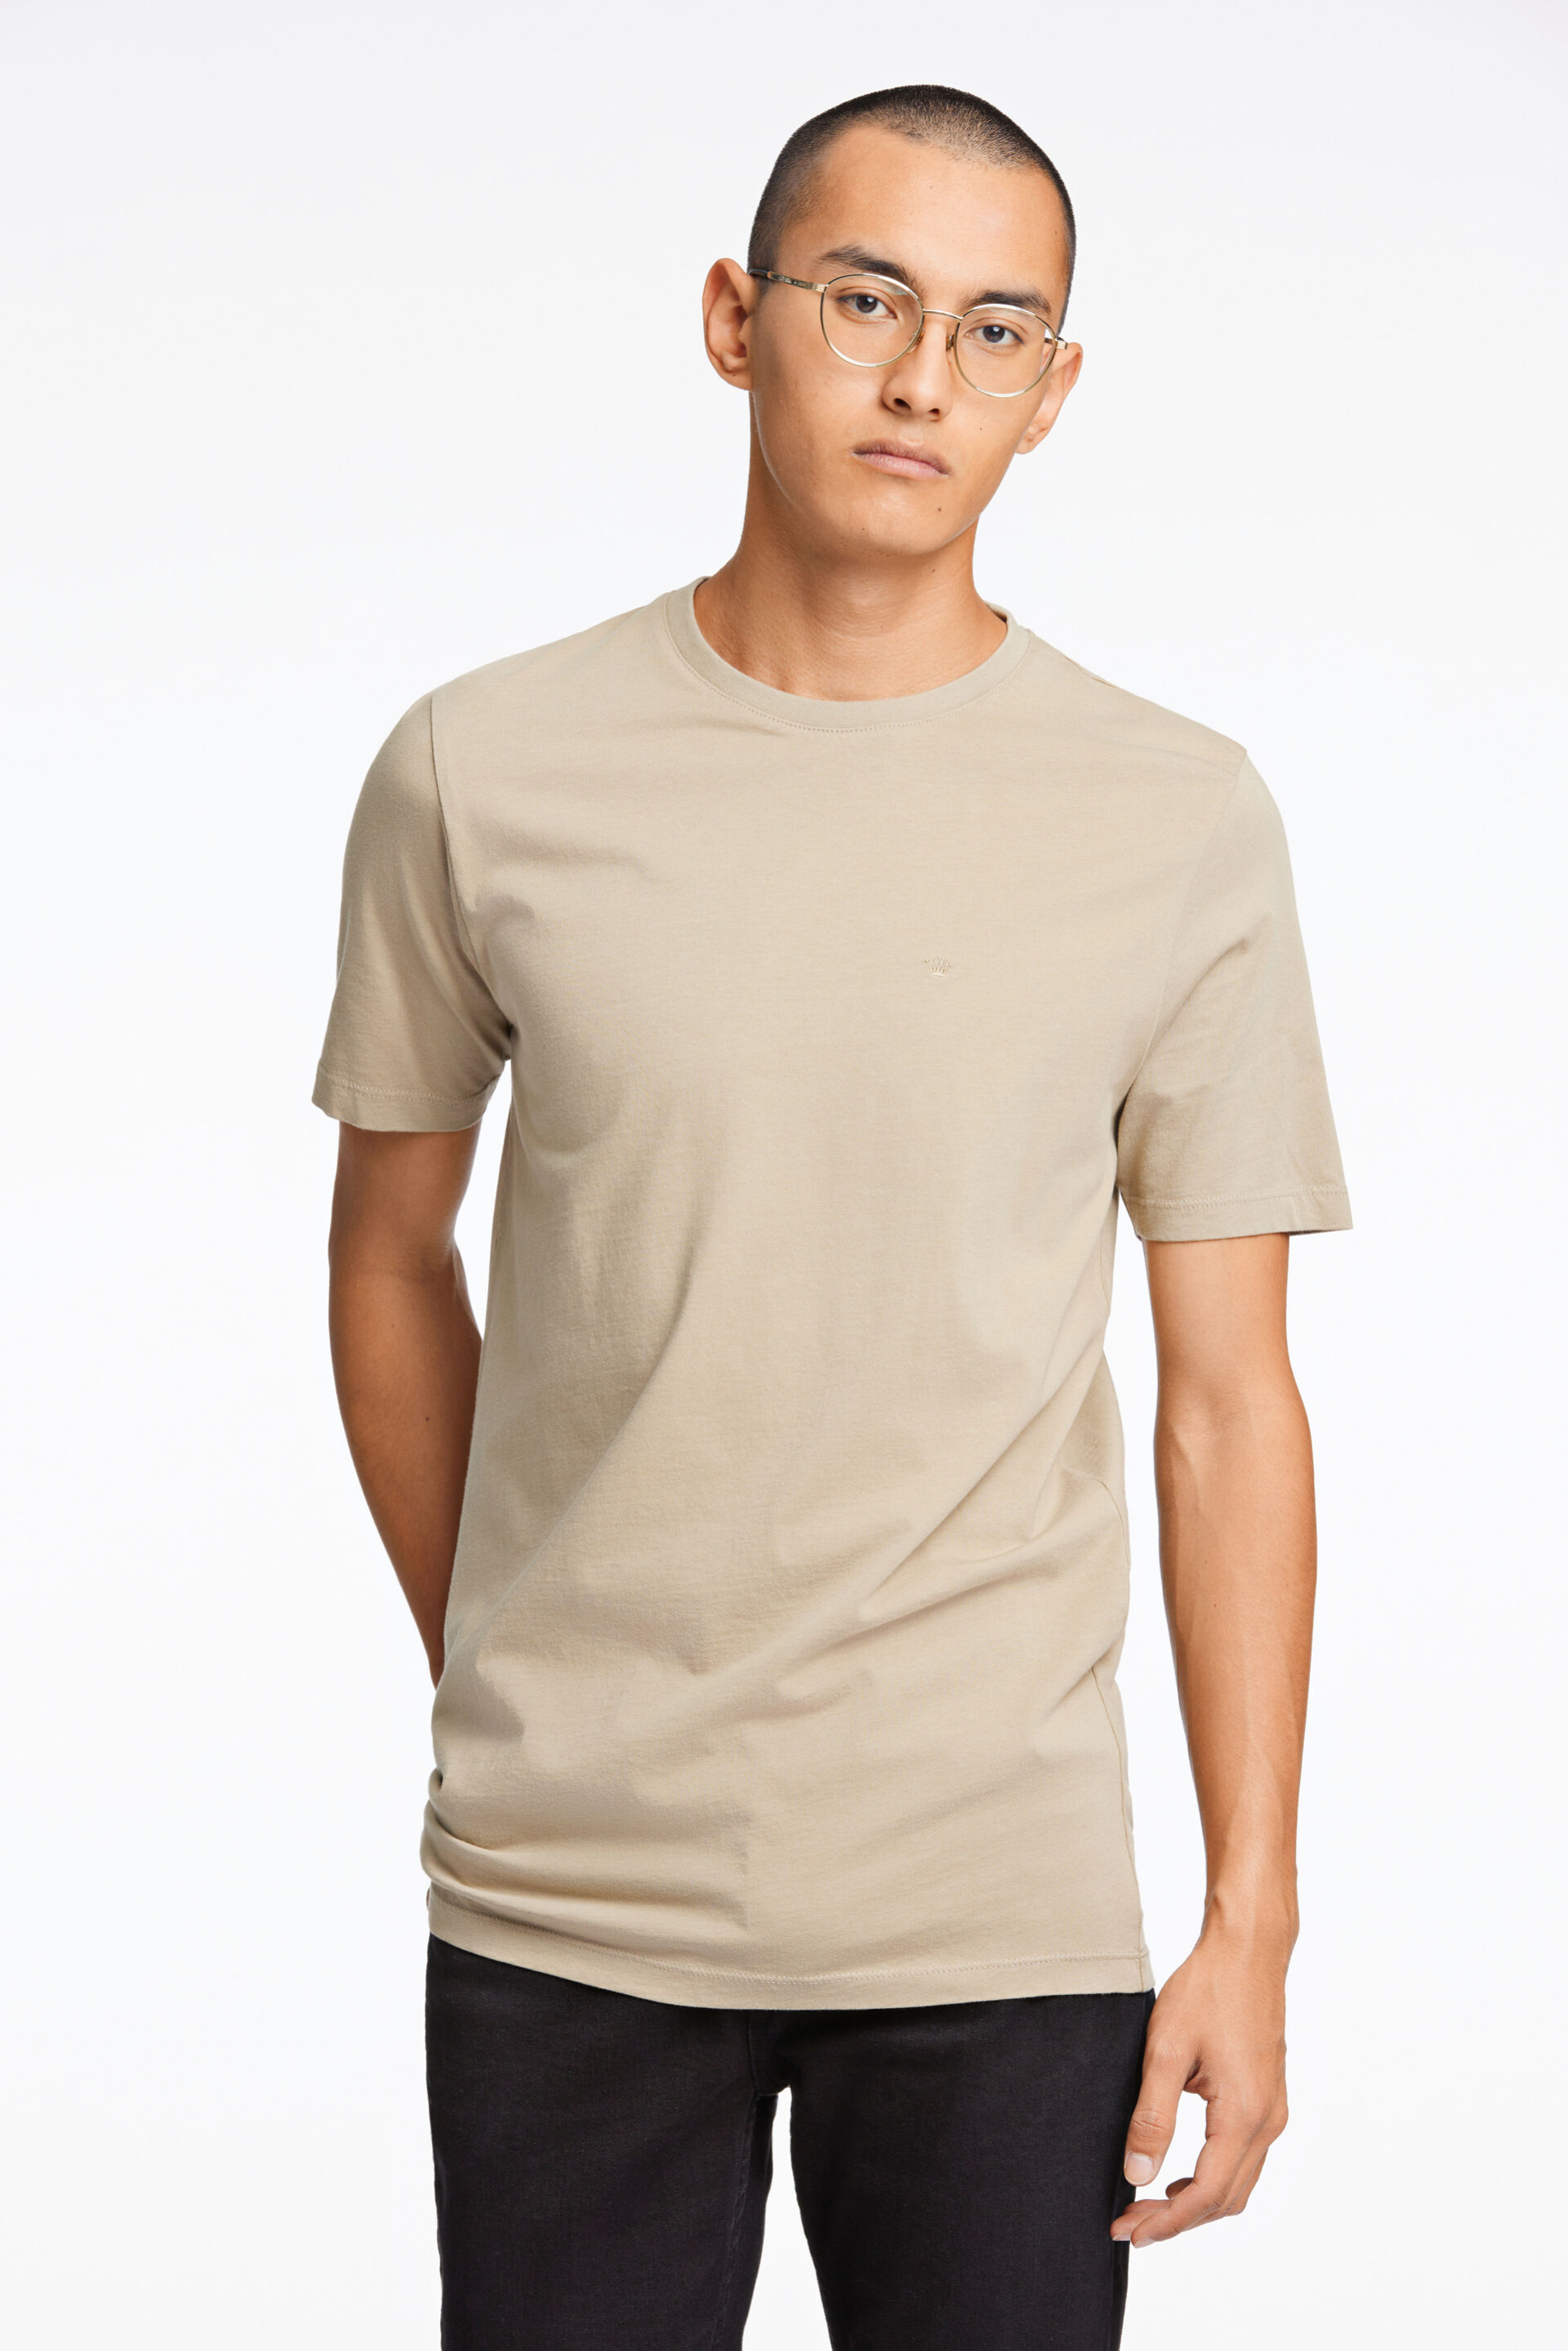 Junk de Luxe  T-shirt Sand 60-40005